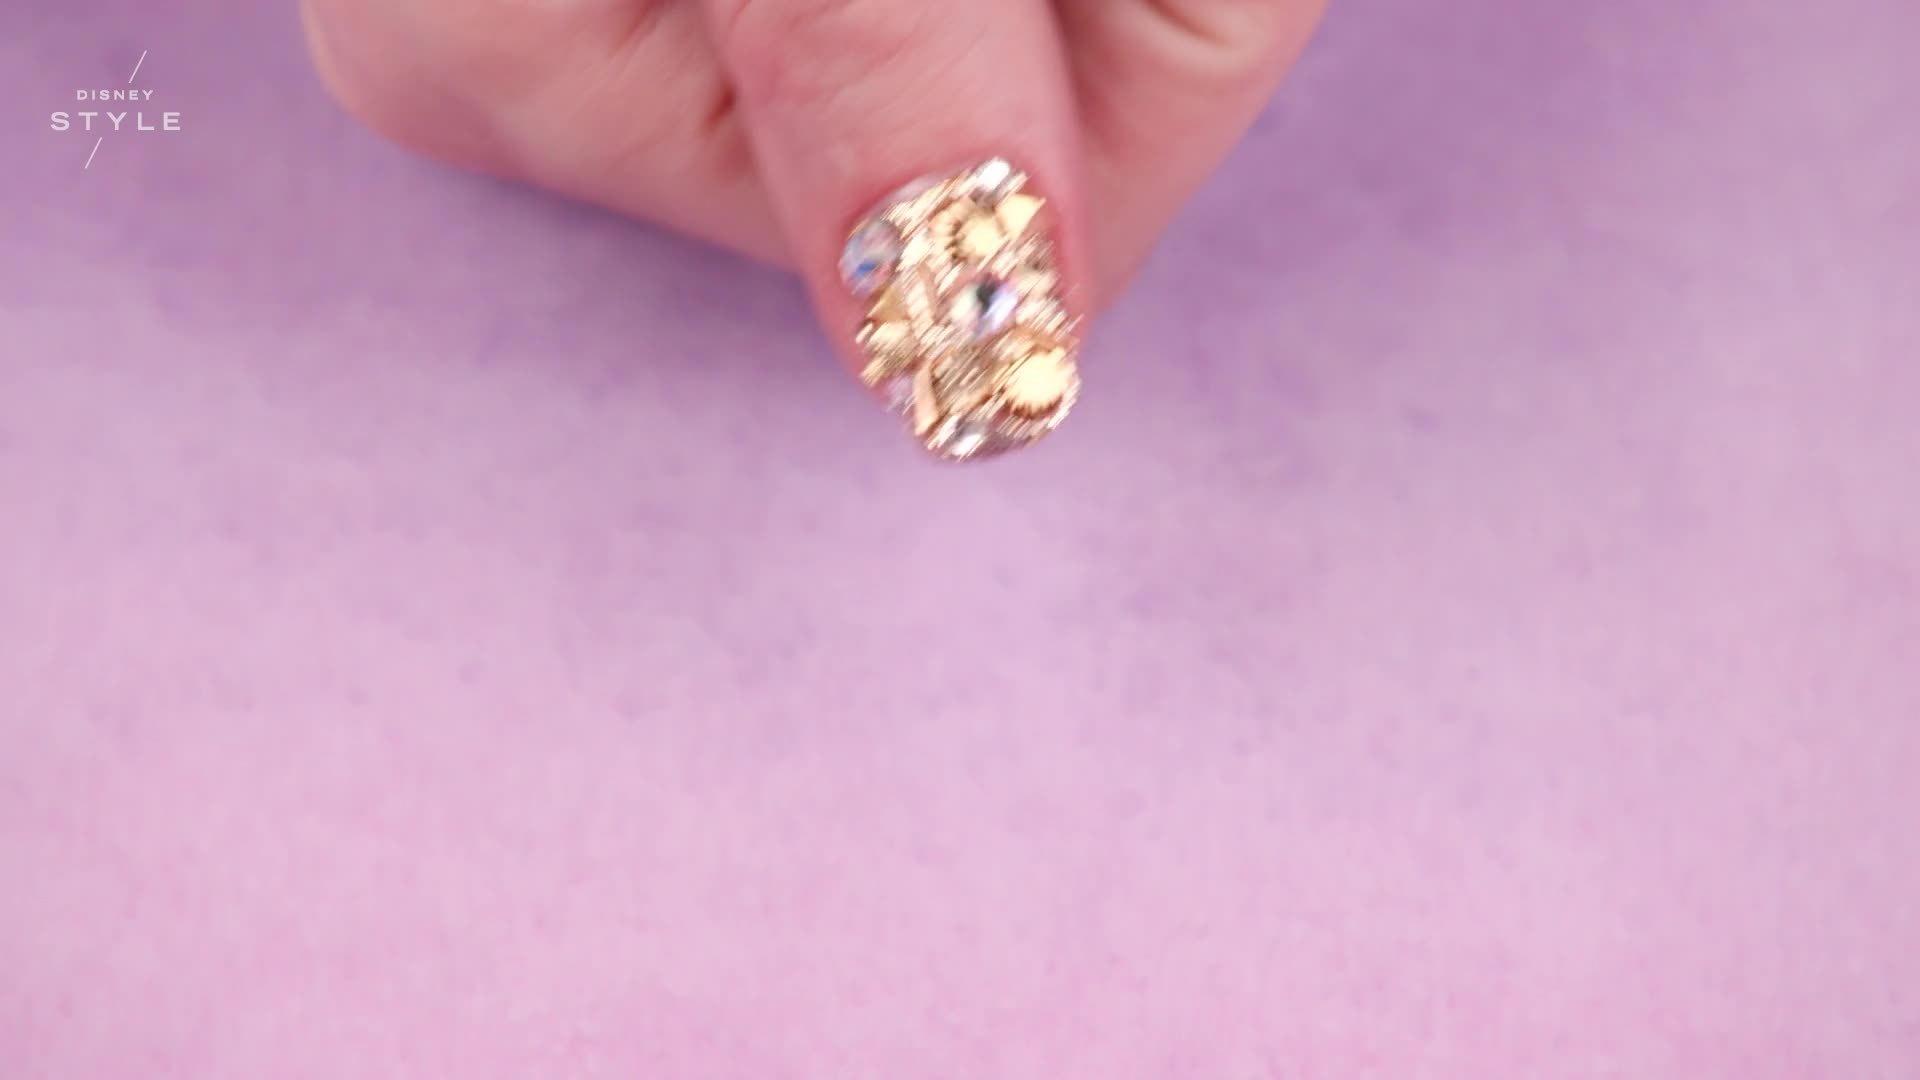 Moana's Tamatoa Gold 3D Nail Art | TIPS by Disney Style